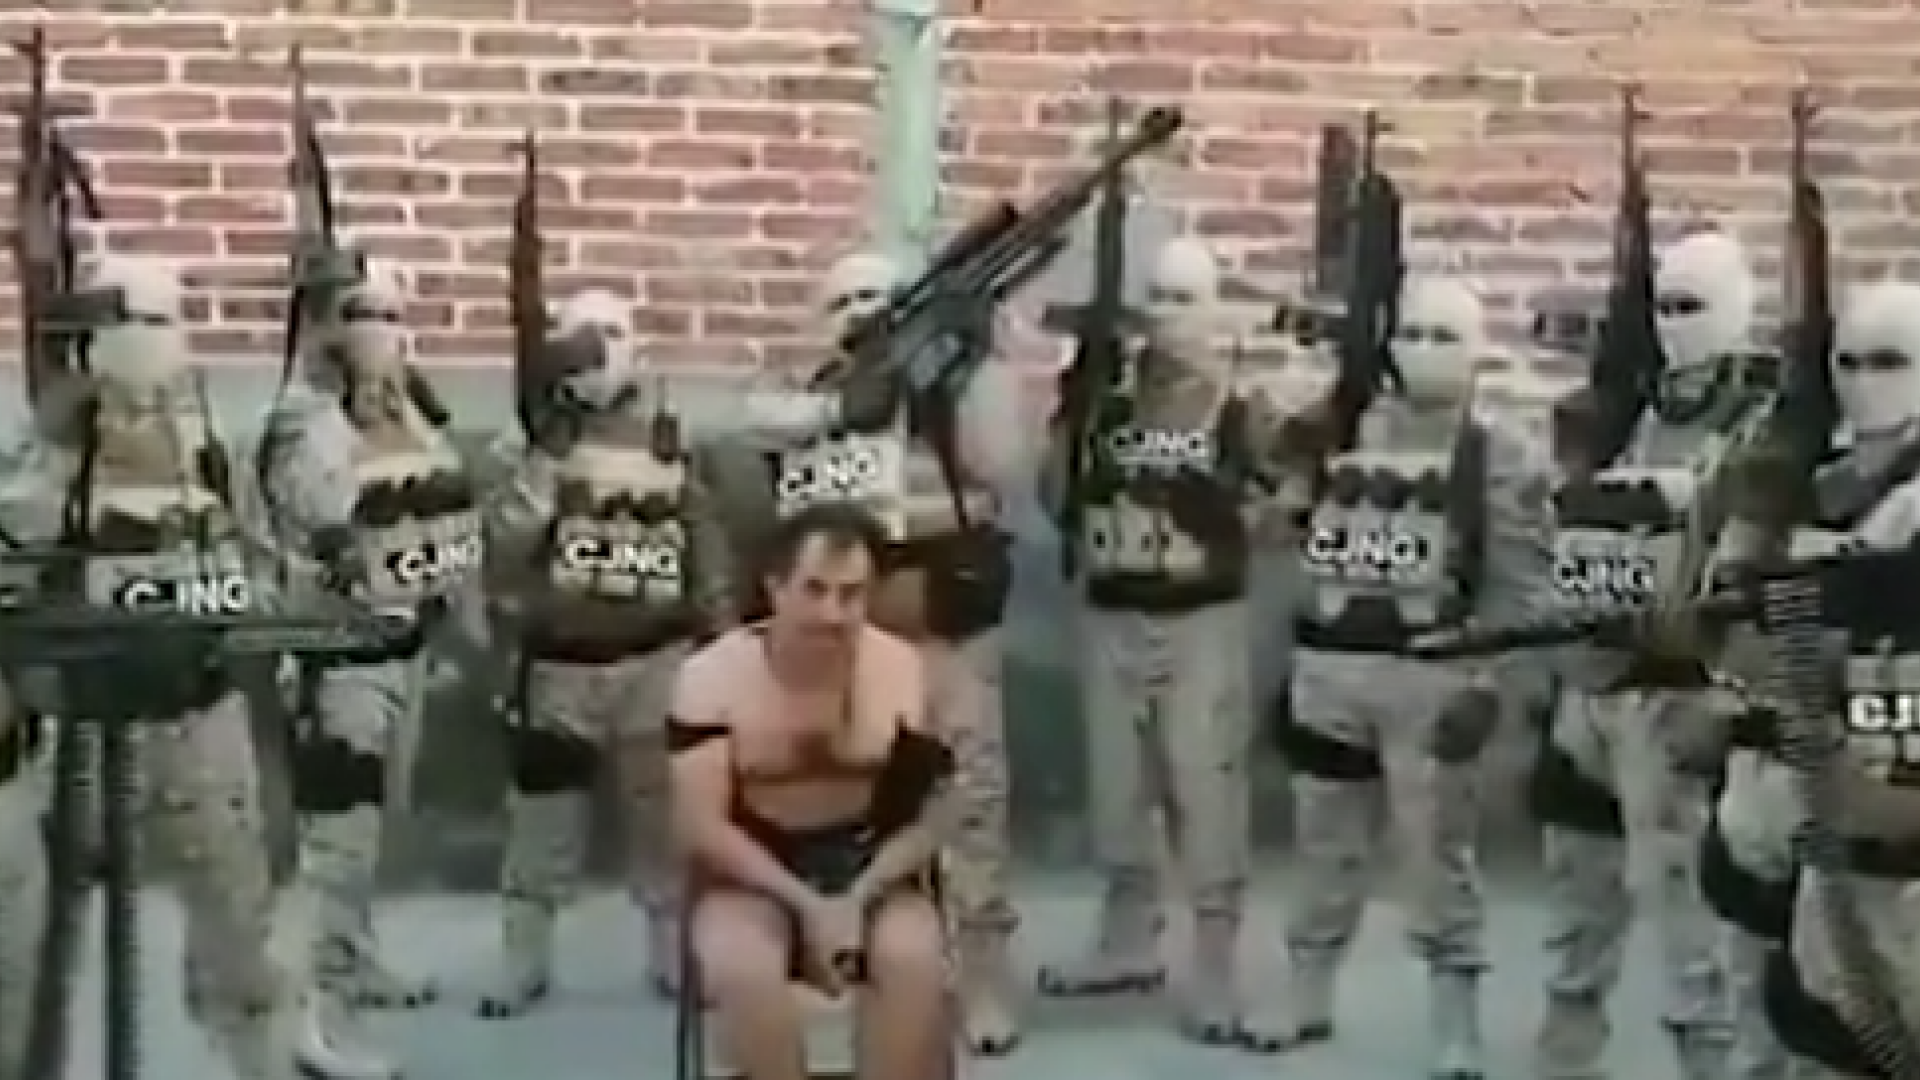 Ultimele clipe ale unui mexican, înainte de a fi executat de cartelul rival